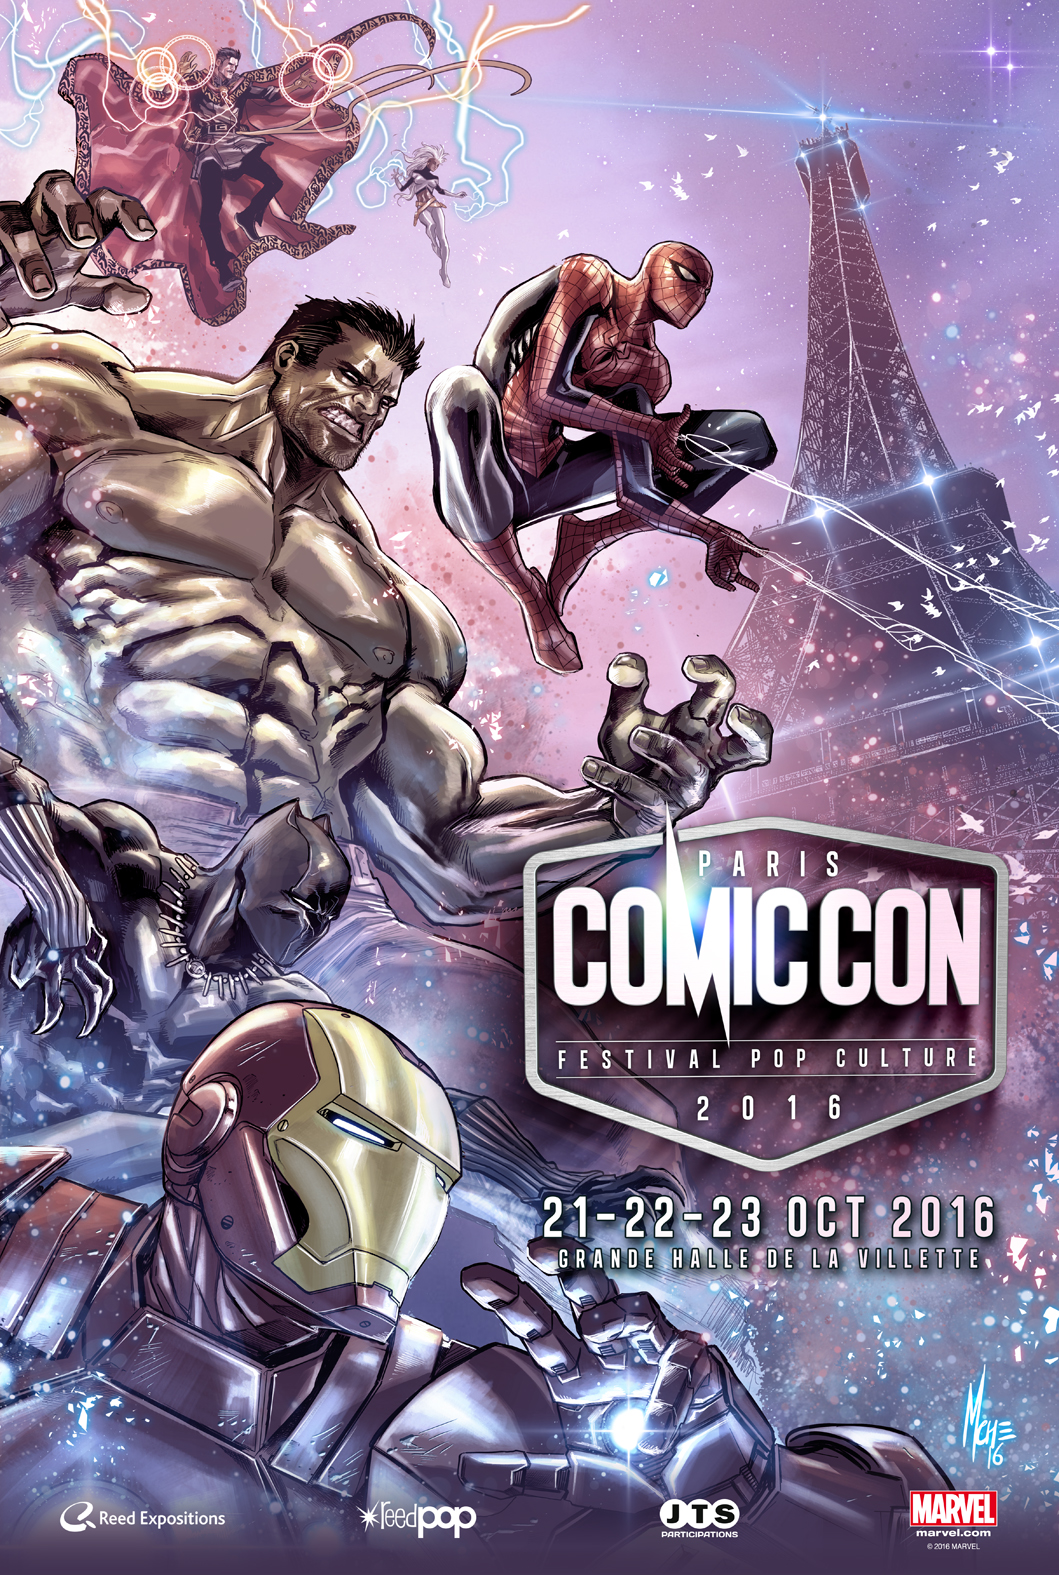 Le Comic Con Paris 2016 dévoile son affiche officielle ! ActuMag.fr